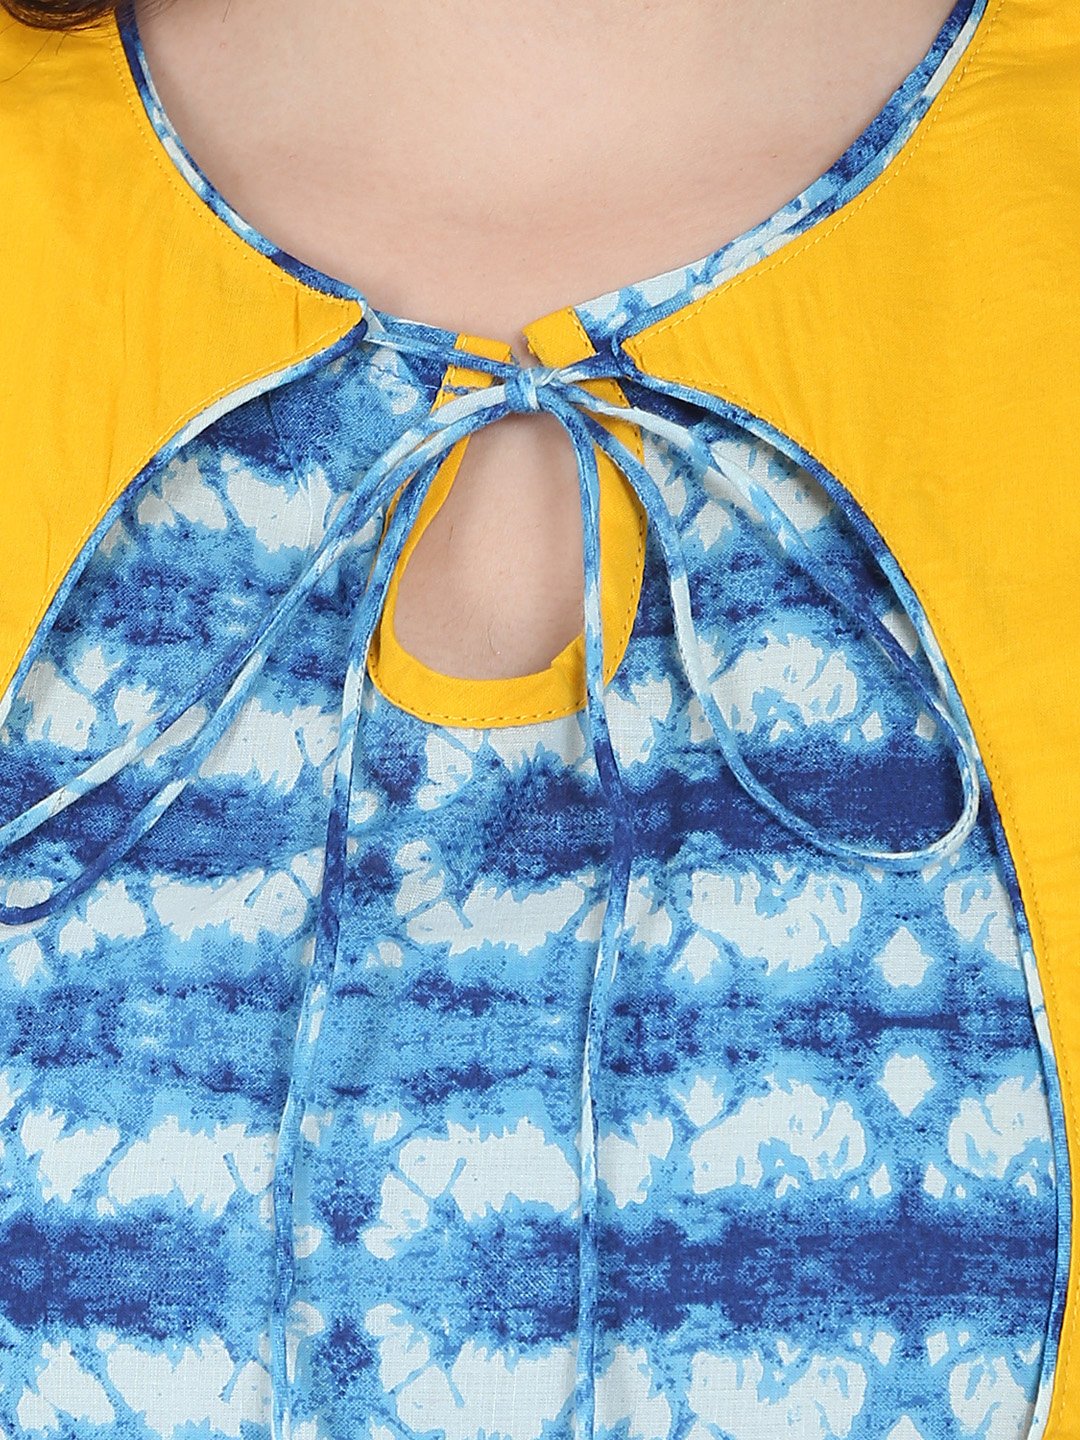 Women's Blue Printed Sleeveless Cotton Anarkali Kurta With Yellow Jacket - Nayo Clothing